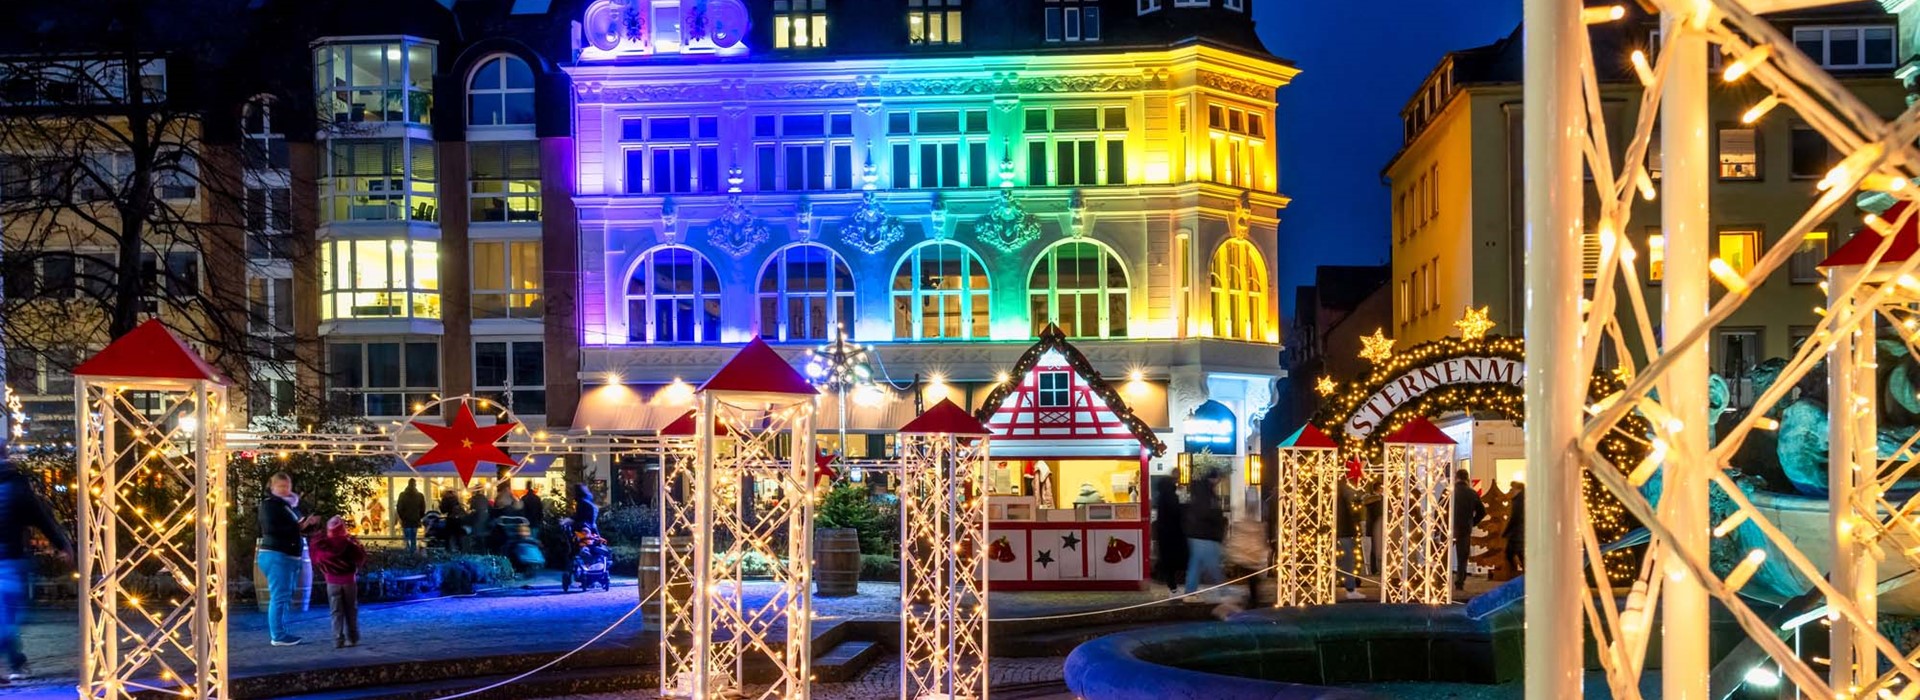 tourhub | Newmarket Holidays | Christmas on the Rhine Cruise 